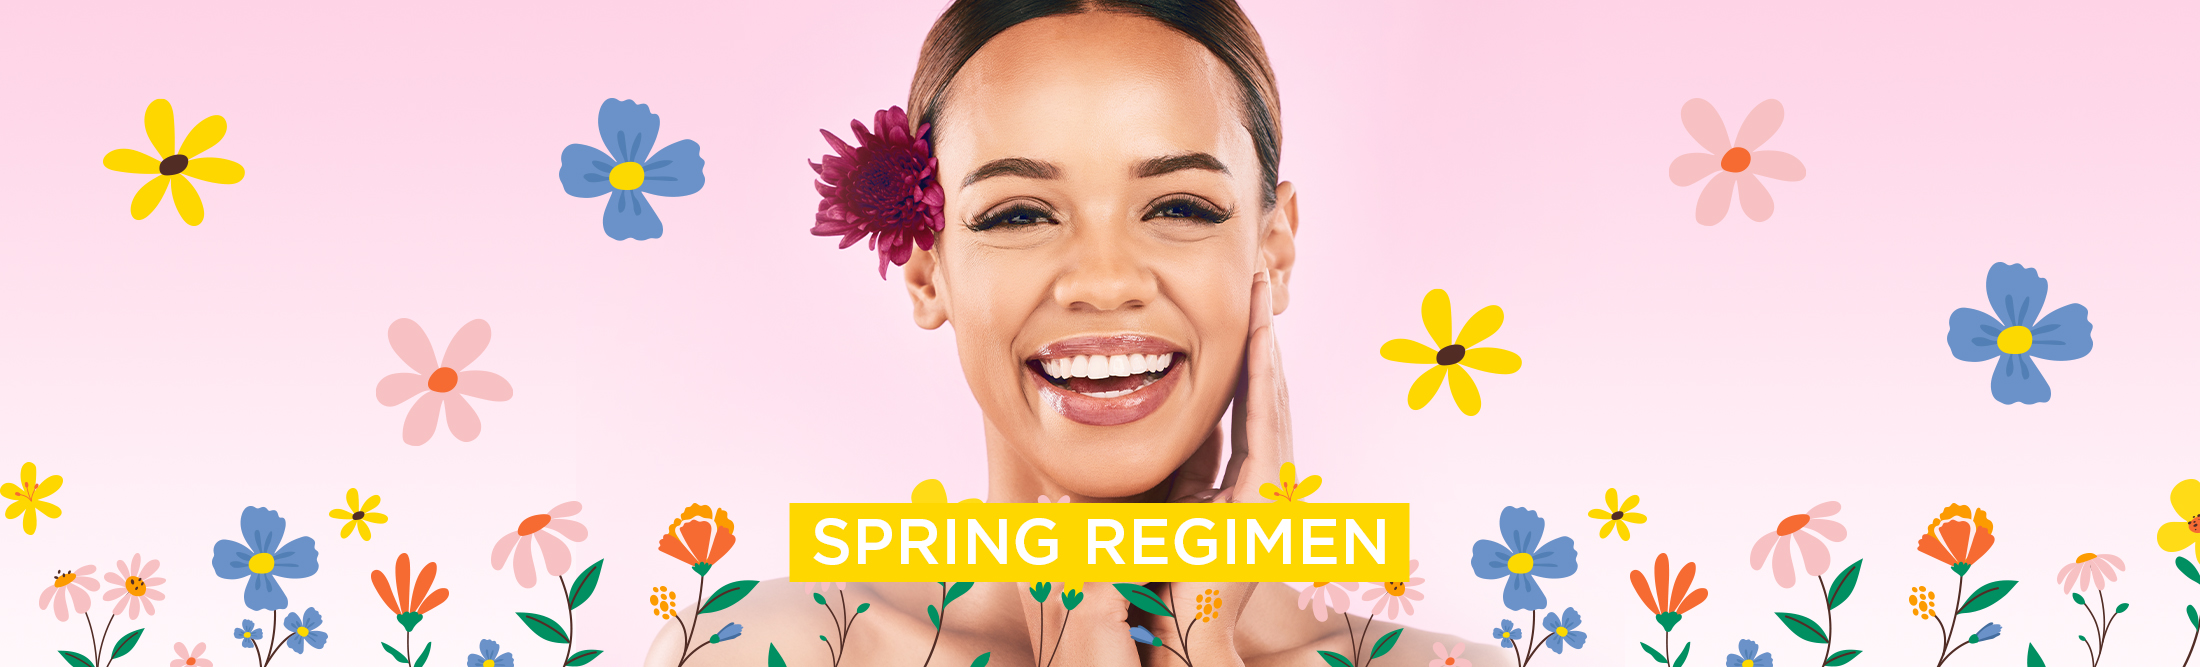 Spring Skin Care Regimen